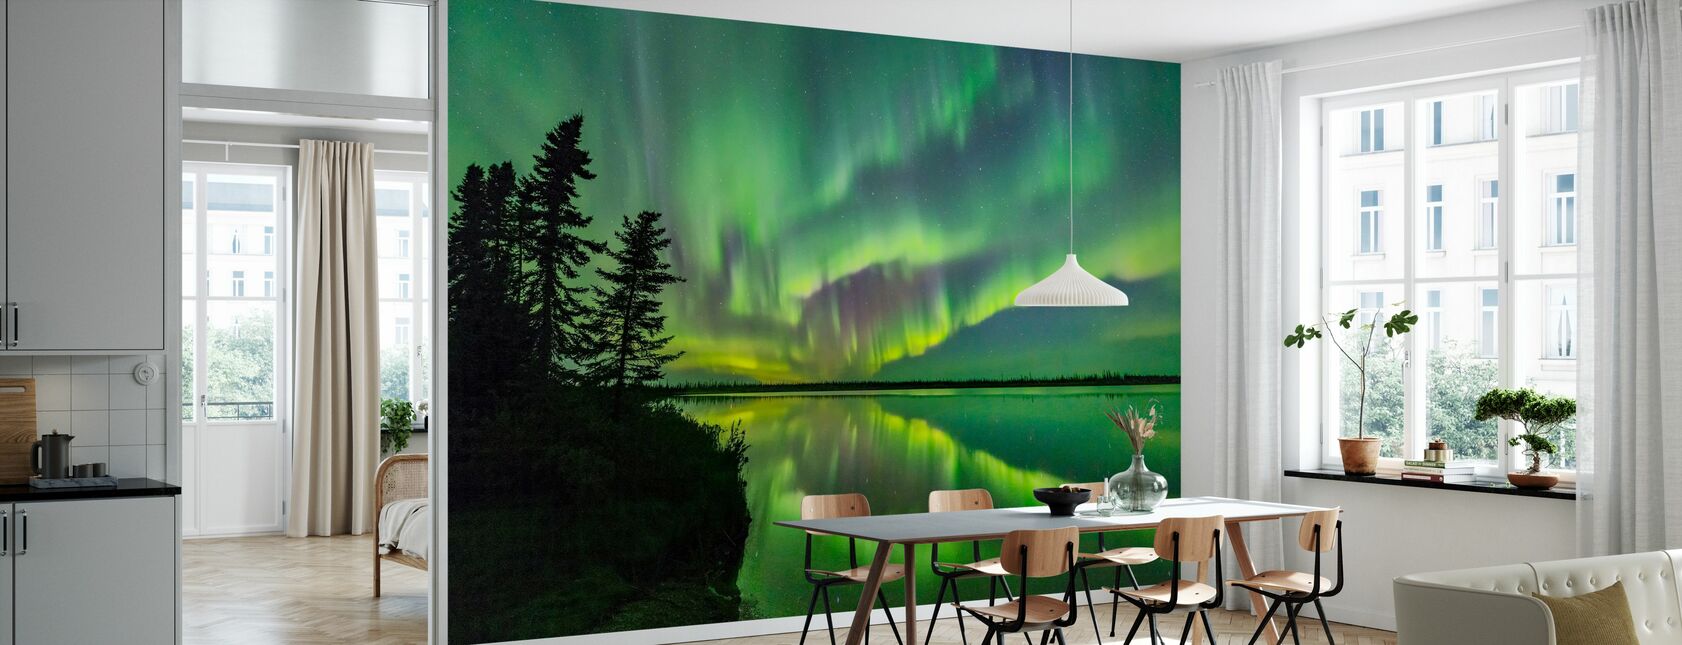 Aurora Borealis - Wallpaper - Kitchen